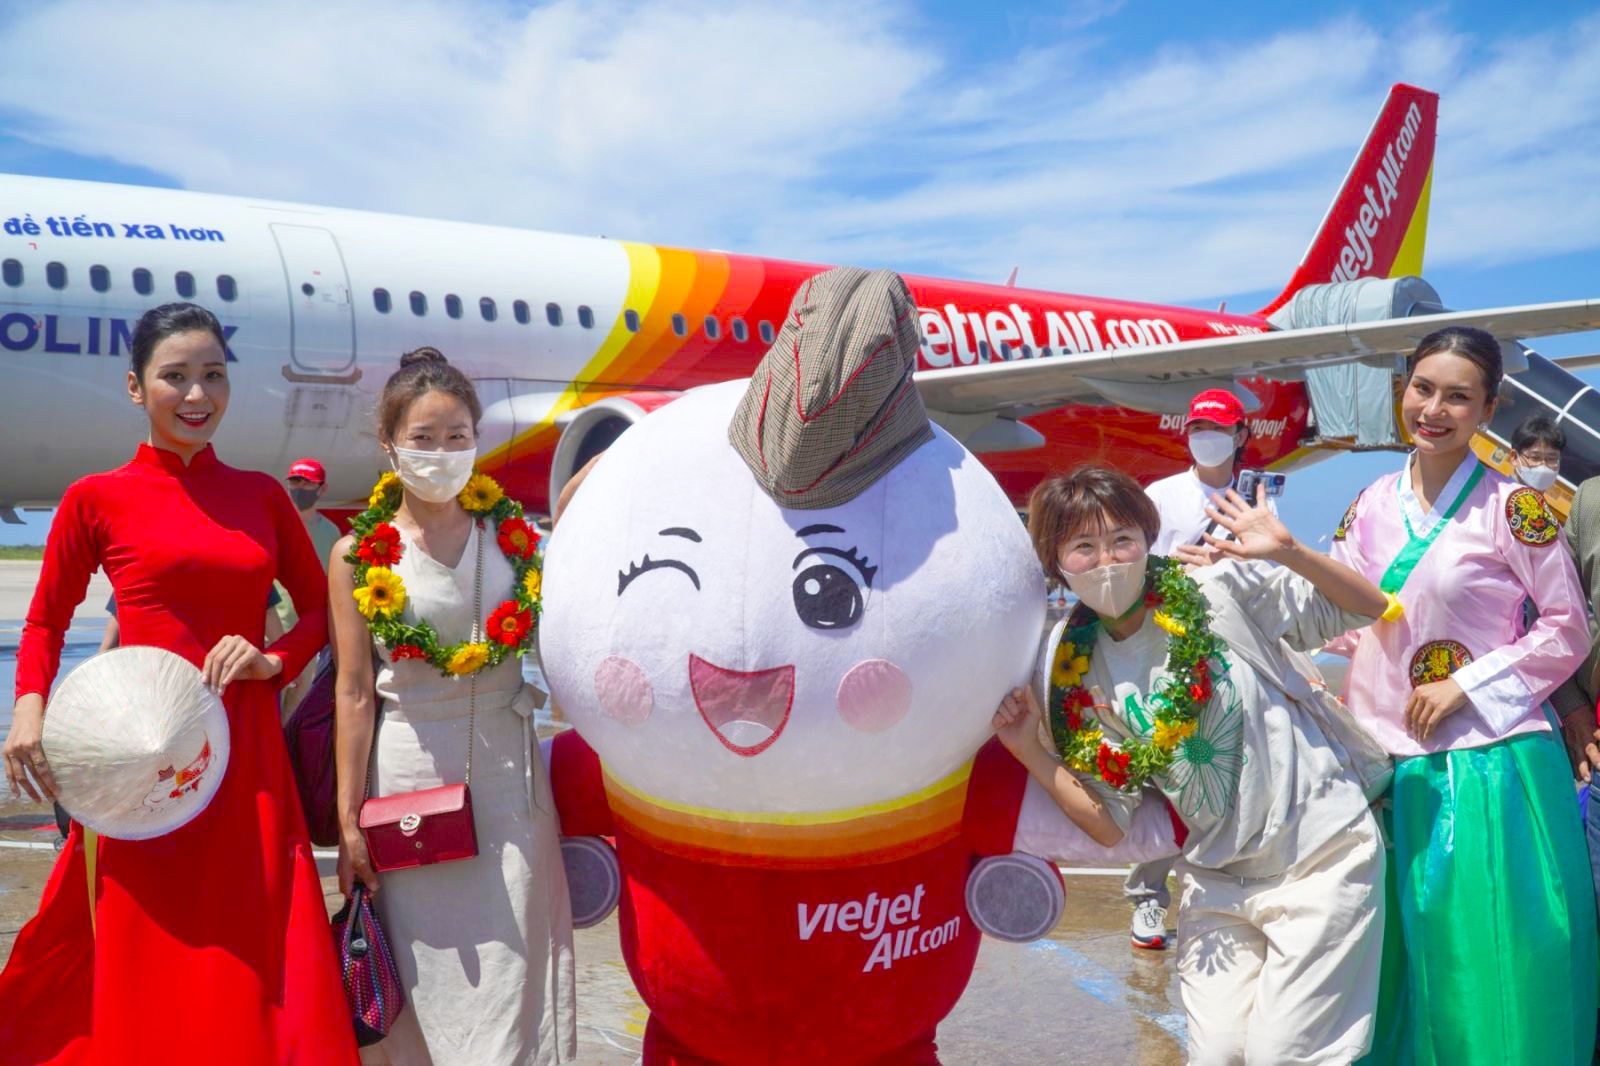 Vietjet là hãng hàng không đầu tiên mở chuyến bay thẳng từ Cần Thơ và Đà Lạt đến Seoul.  - vietjet_passengers - Đường bay mới của Vietjet kết nối Cần Thơ, Đà Lạt với Seoul